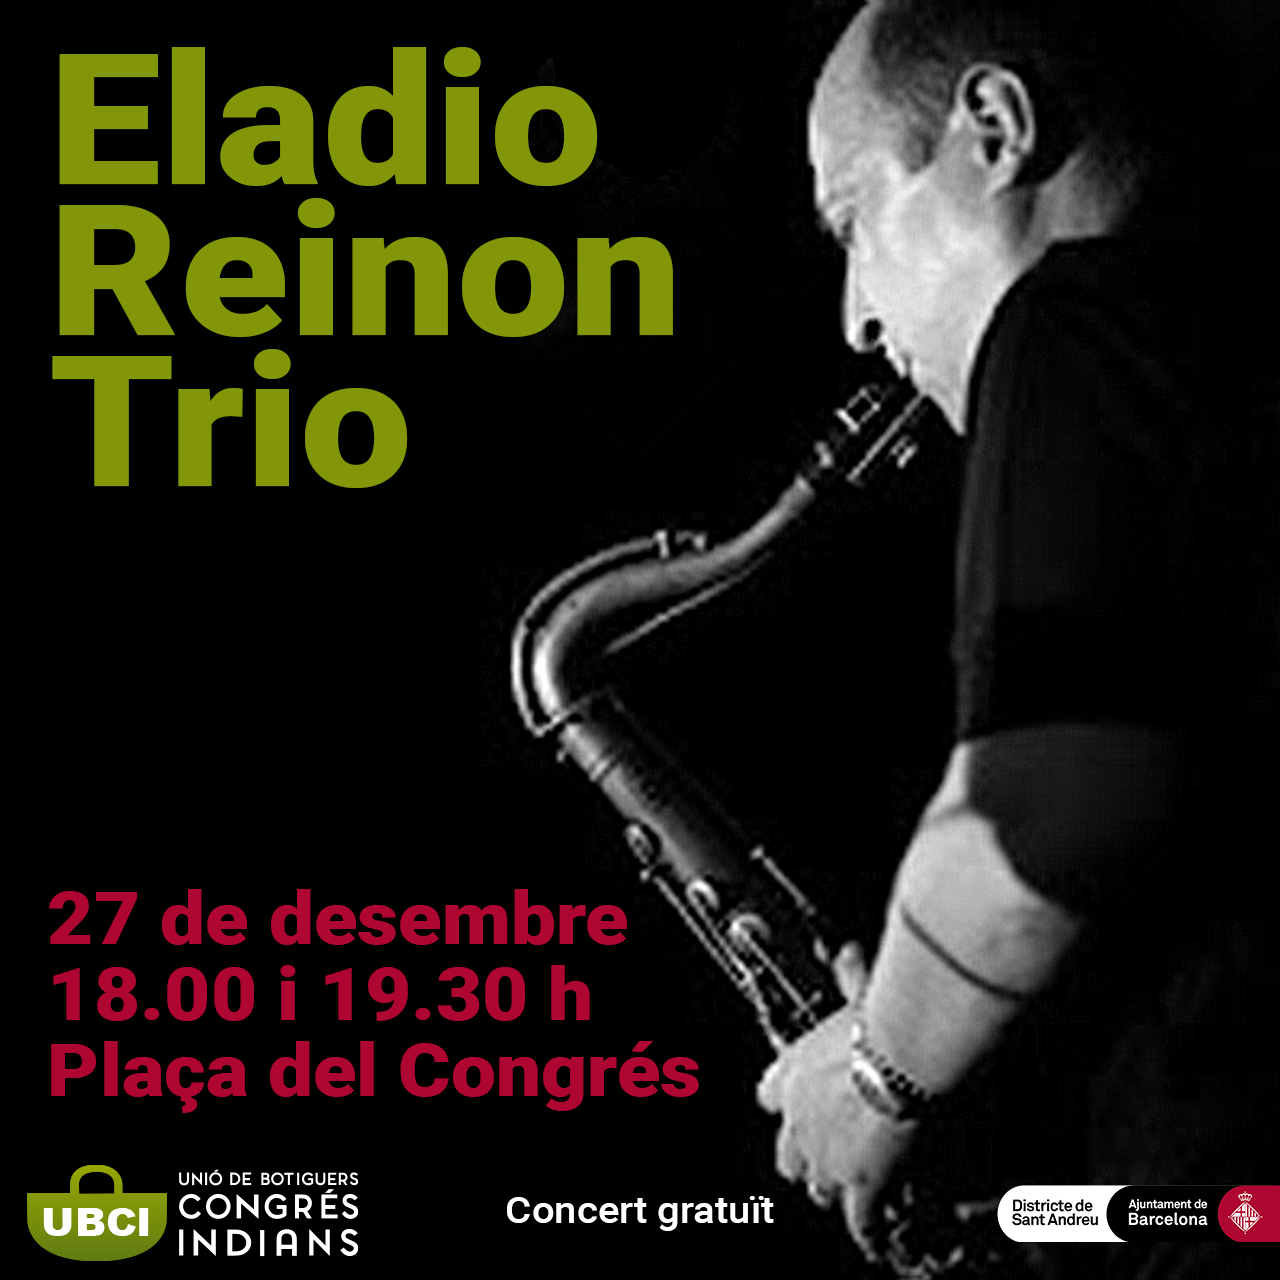 Eladio Reinon Trio